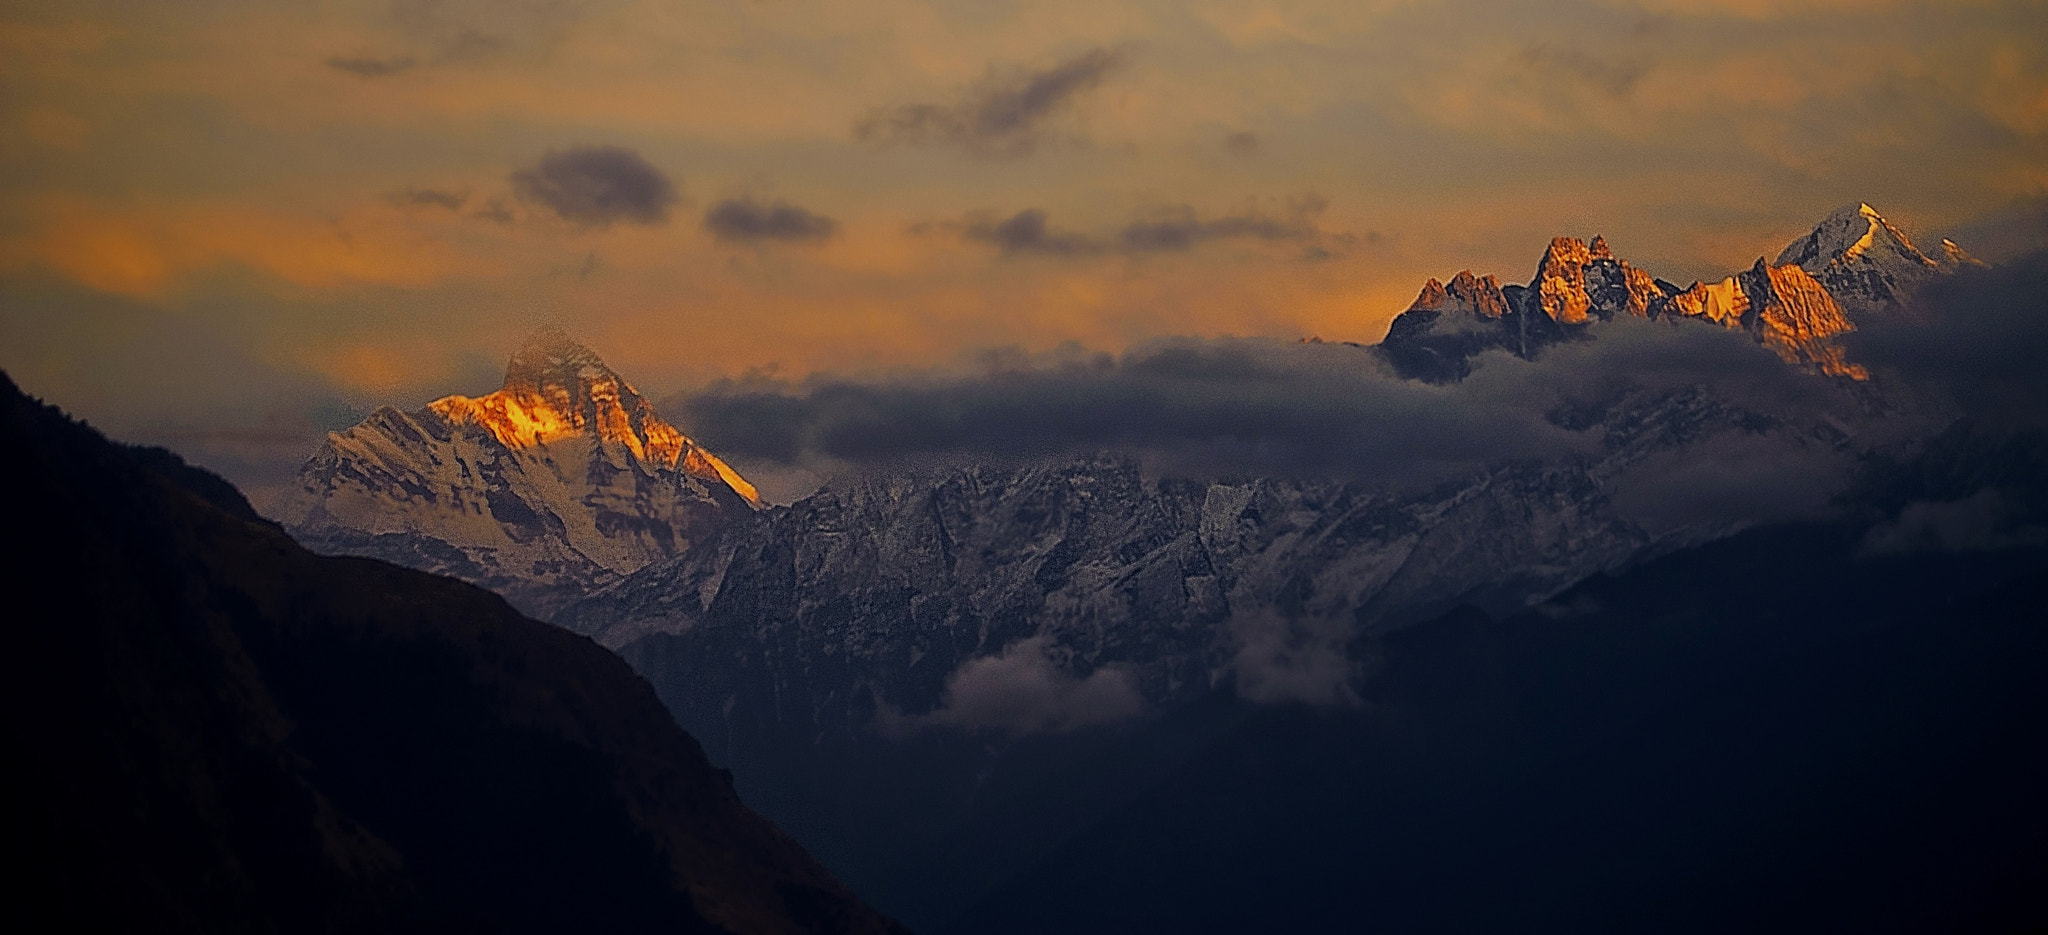 Nikon D90 sample photo. Himalayan sunset scenery photography